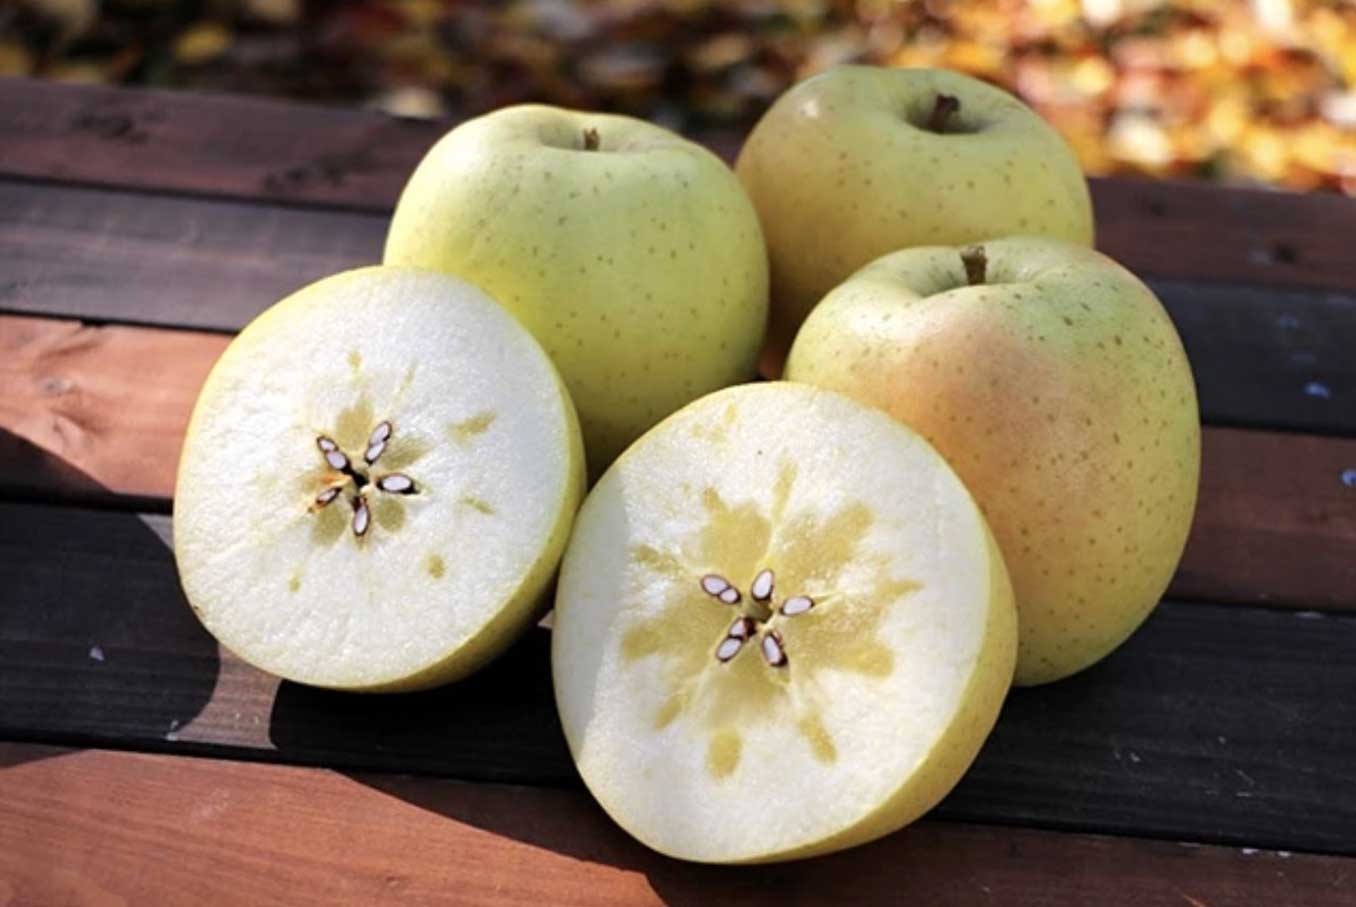 日本水果品种授权国际化 Kimito苹果投种南非